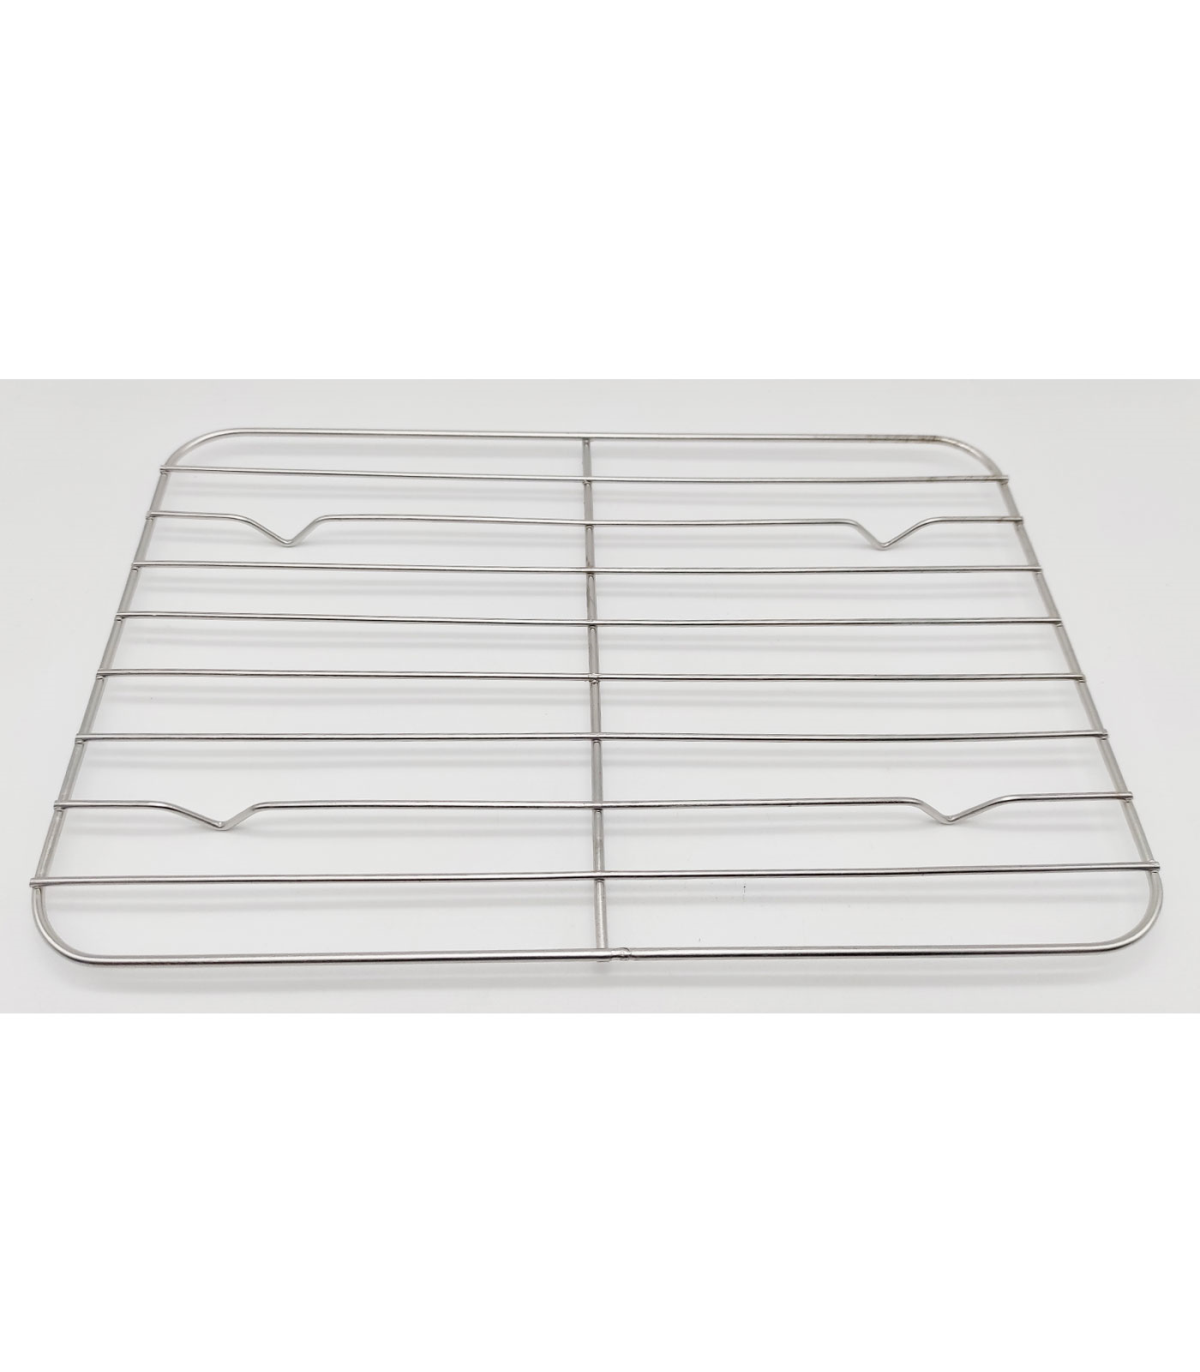 Tradineur - Bandeja de aluminio rectangular, ideal para hornear, higiénica  y resistente, recetas al horno, postres, verduras, as